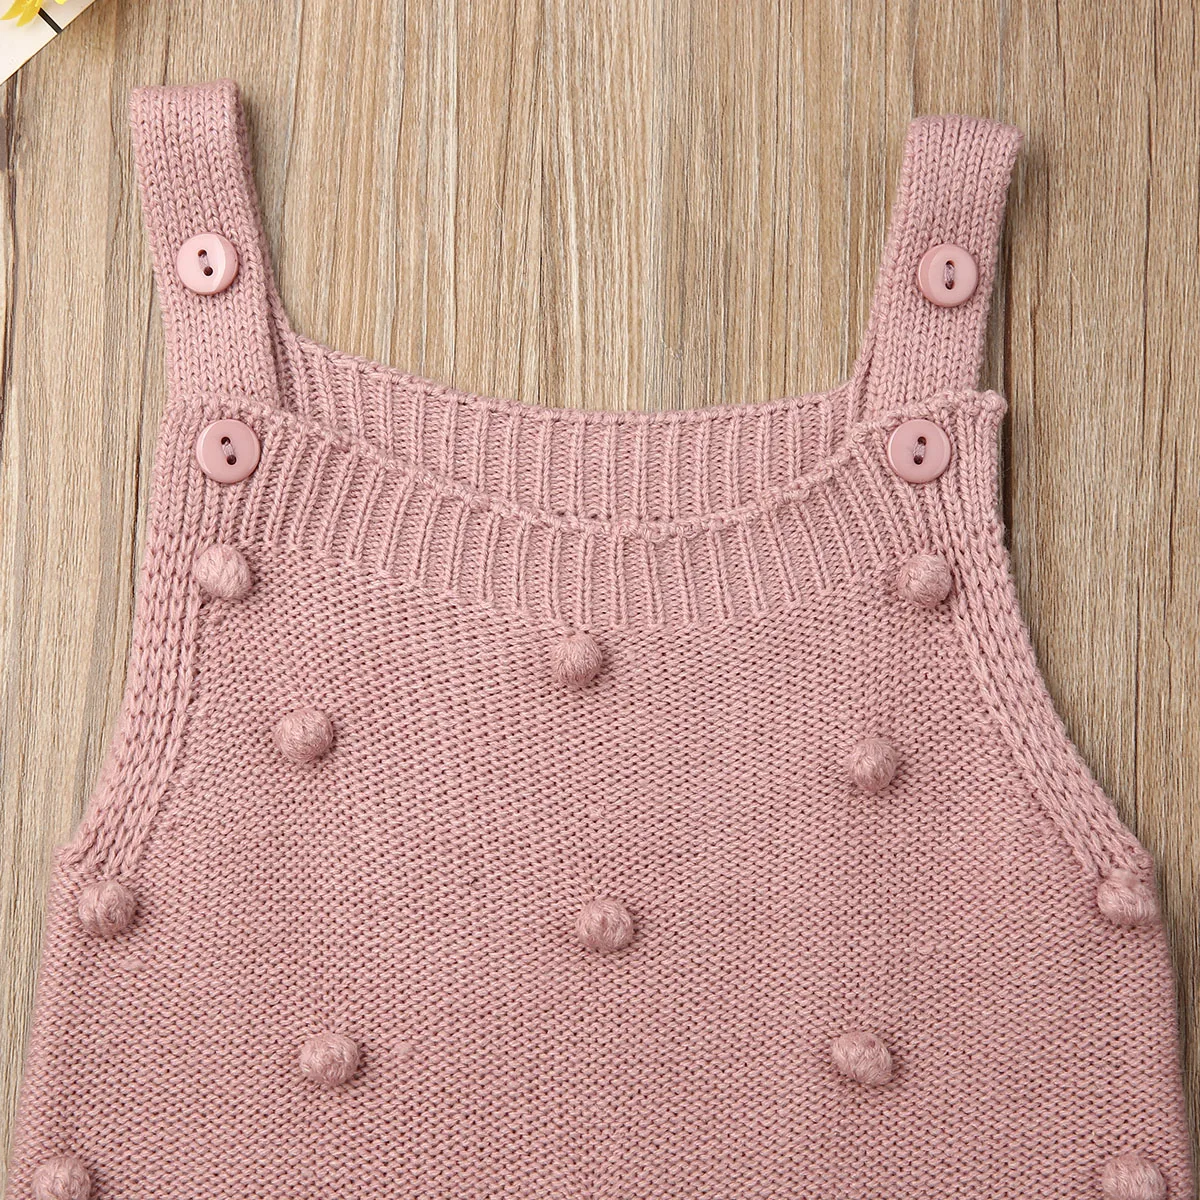 CYSINCOS/0 до 18 месяцев, детские вязаные комбинезоны, комбинезон без рукавов с маленькими шариками для новорожденных мальчиков и девочек, цельнокроеная одежда Зимний комбинезон